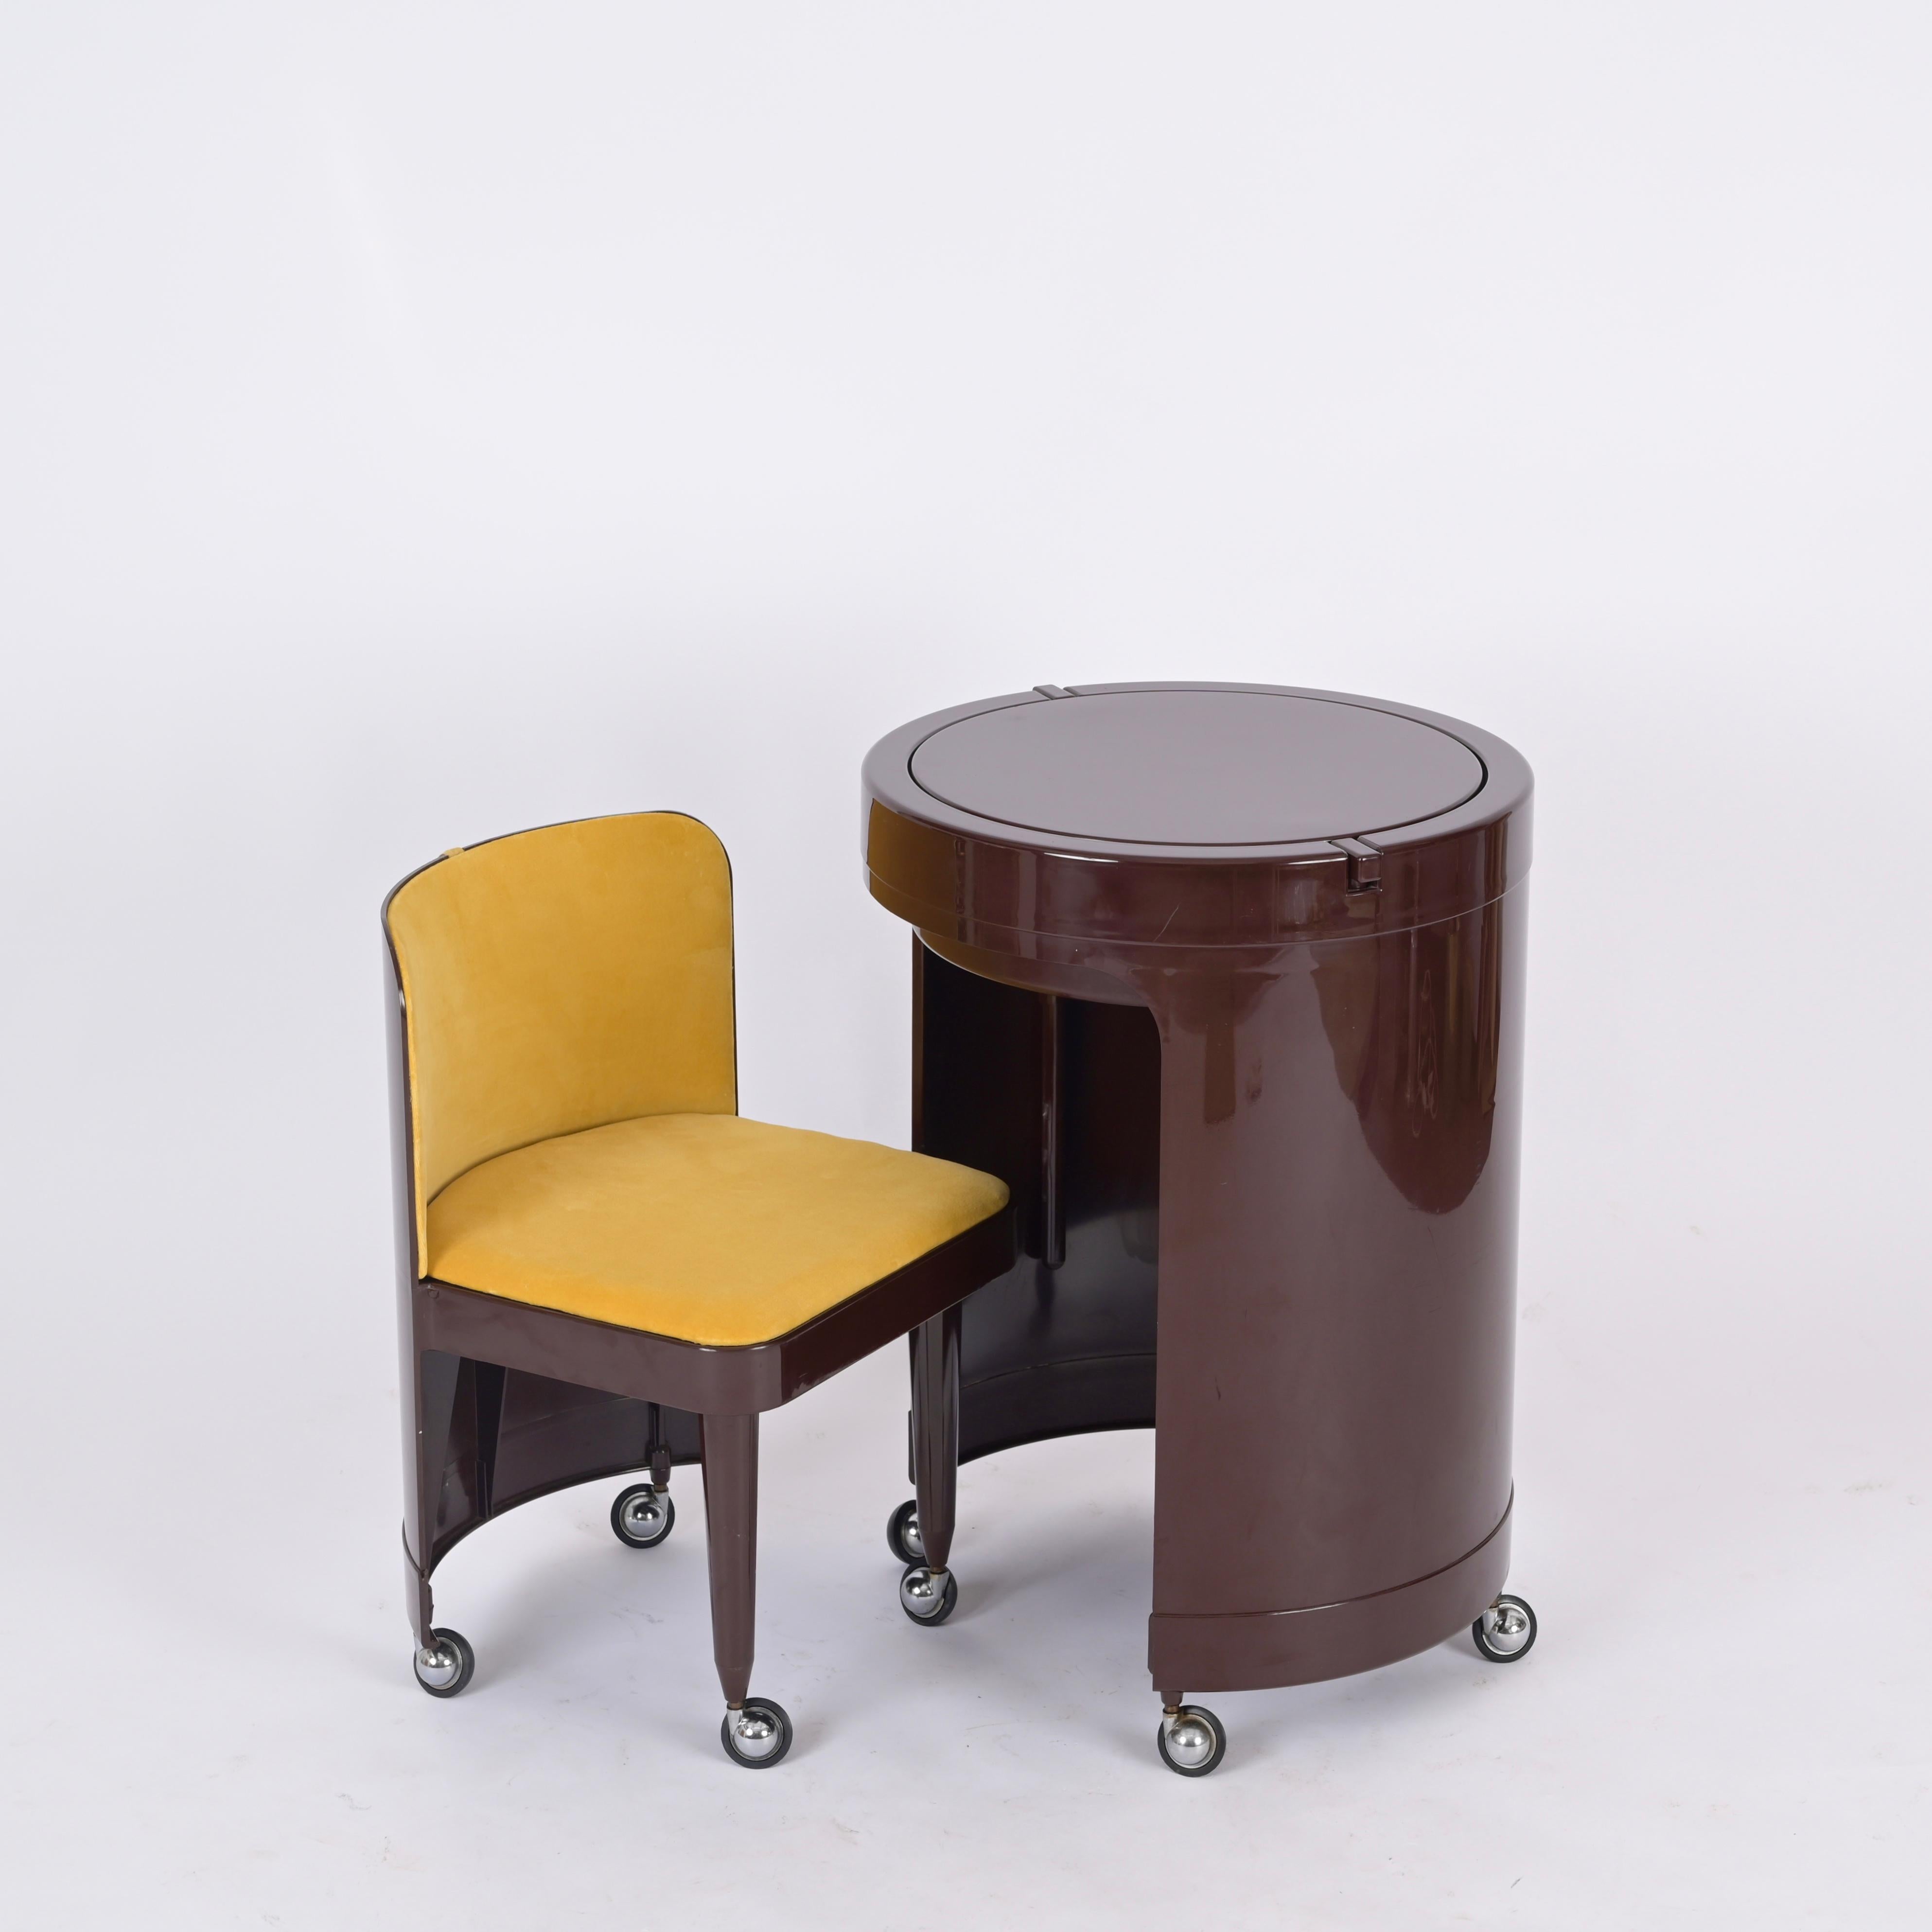 Fantastische völlig original und in erstaunlichen Bedingungen Kastilia Waschtisch in einem herrlichen braunen Farbe mit gelben Samt Stuhl und Spiegel. Dieses ikonische Objekt wurde in den 1970er Jahren in Italien entworfen und ist vom Studio